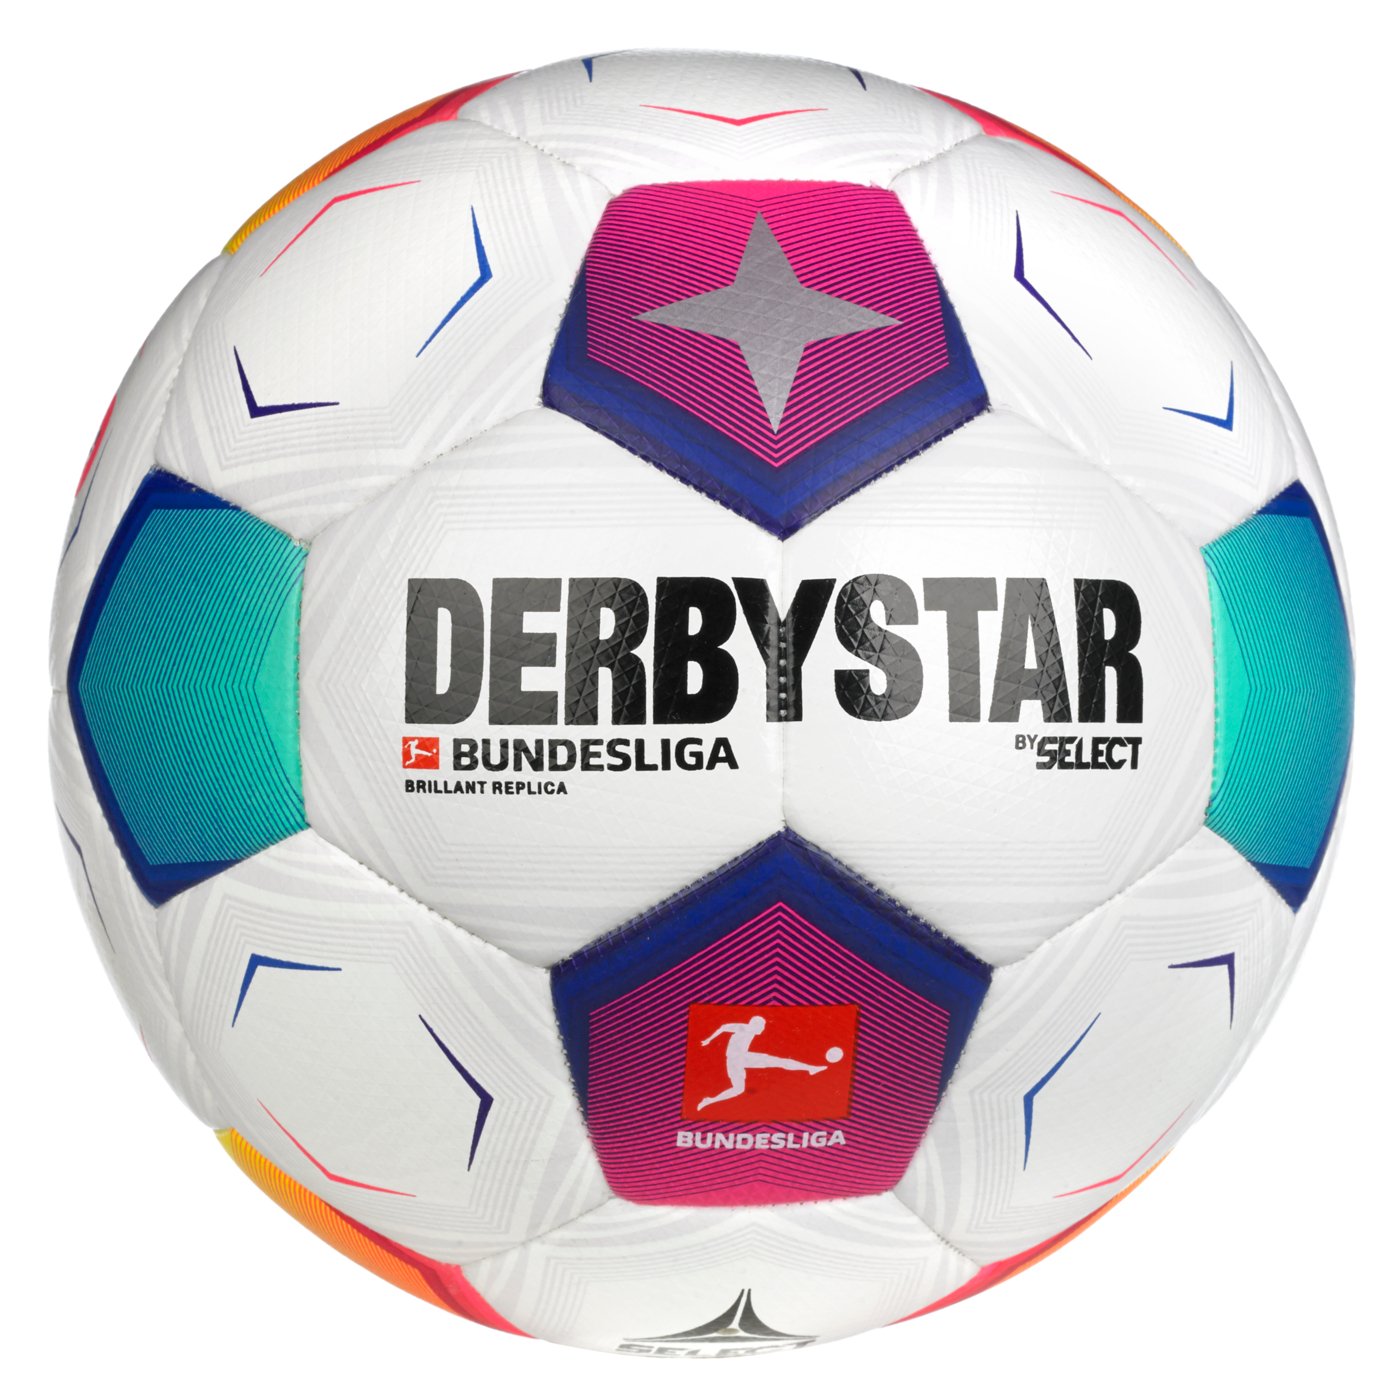 Мяч футбольный SELECT DERBYSTAR Bundesliga Brillant Replica v23 (672) бело/син/фиолет, 5, 5